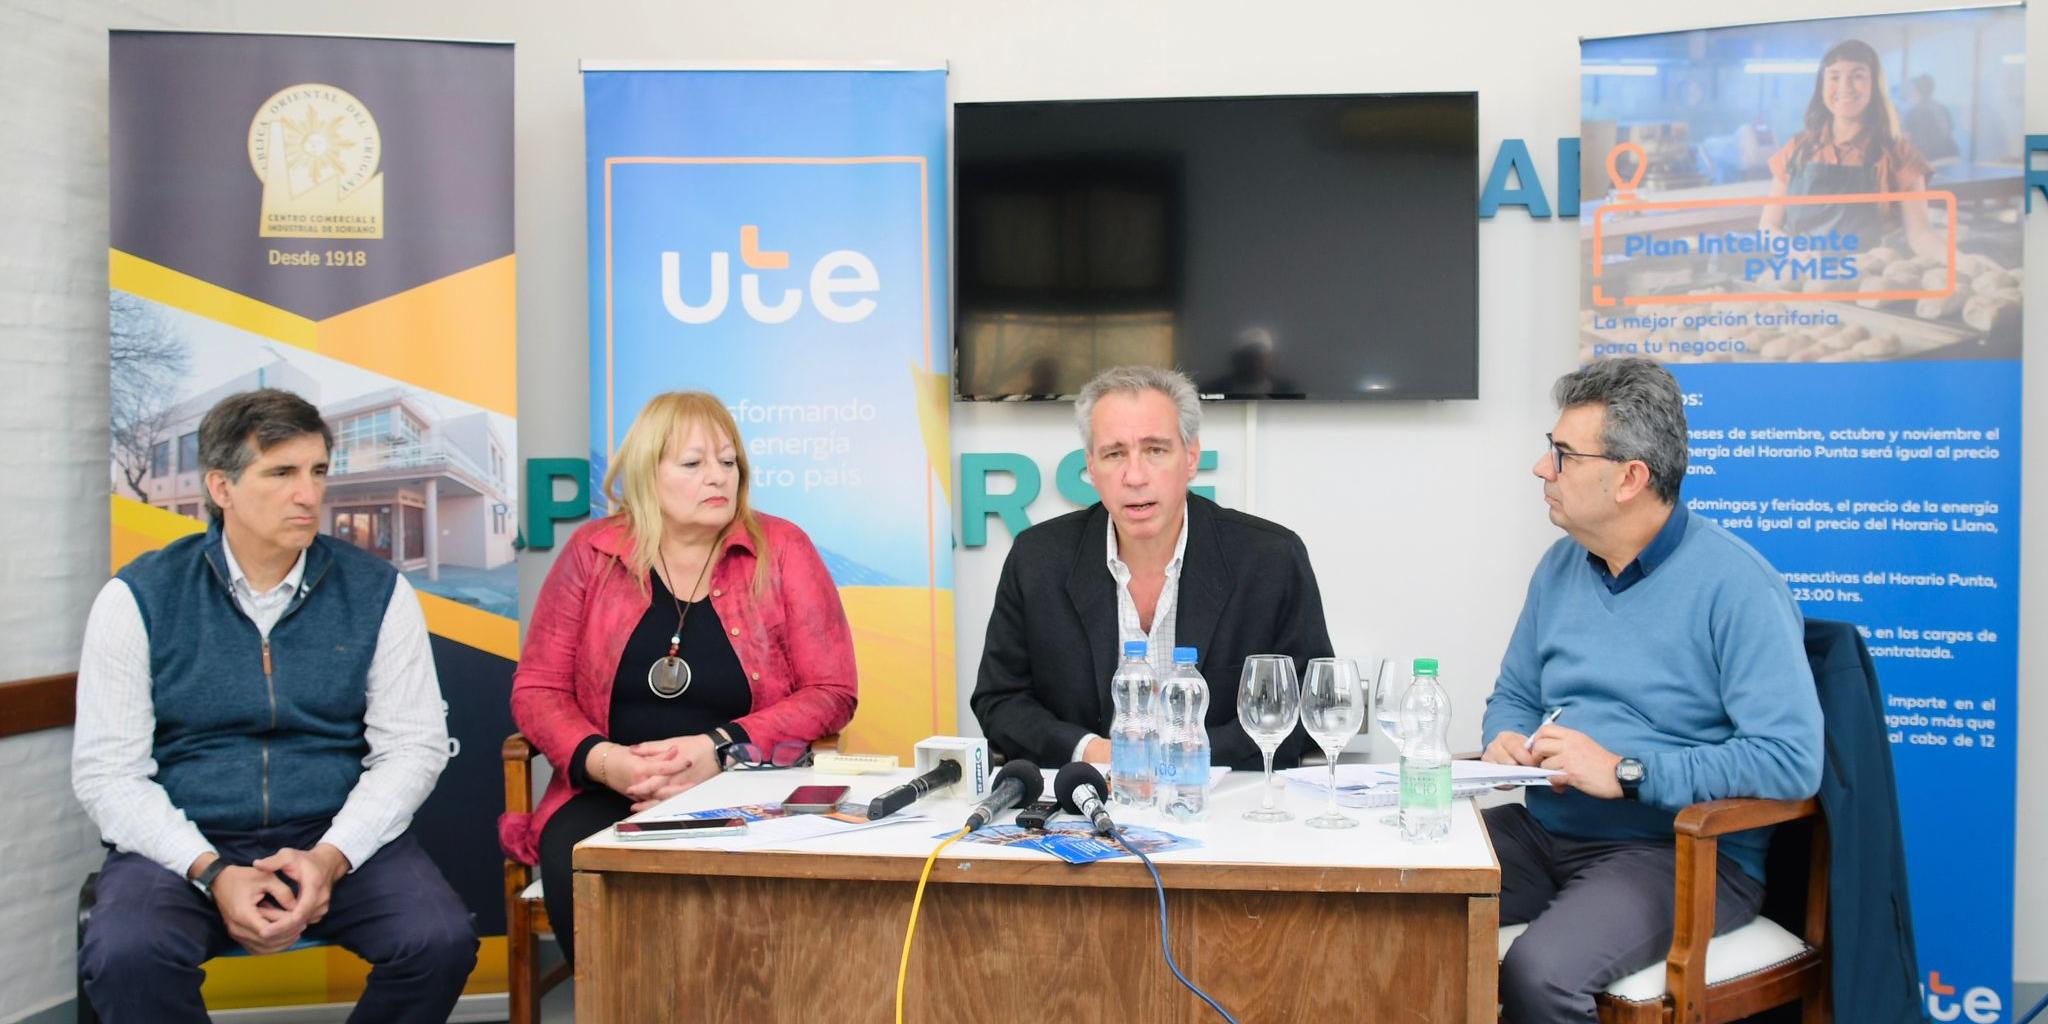 Lanzamiento del Plan Inteligente para PYMES en Soriano mediante conferencia de prensa